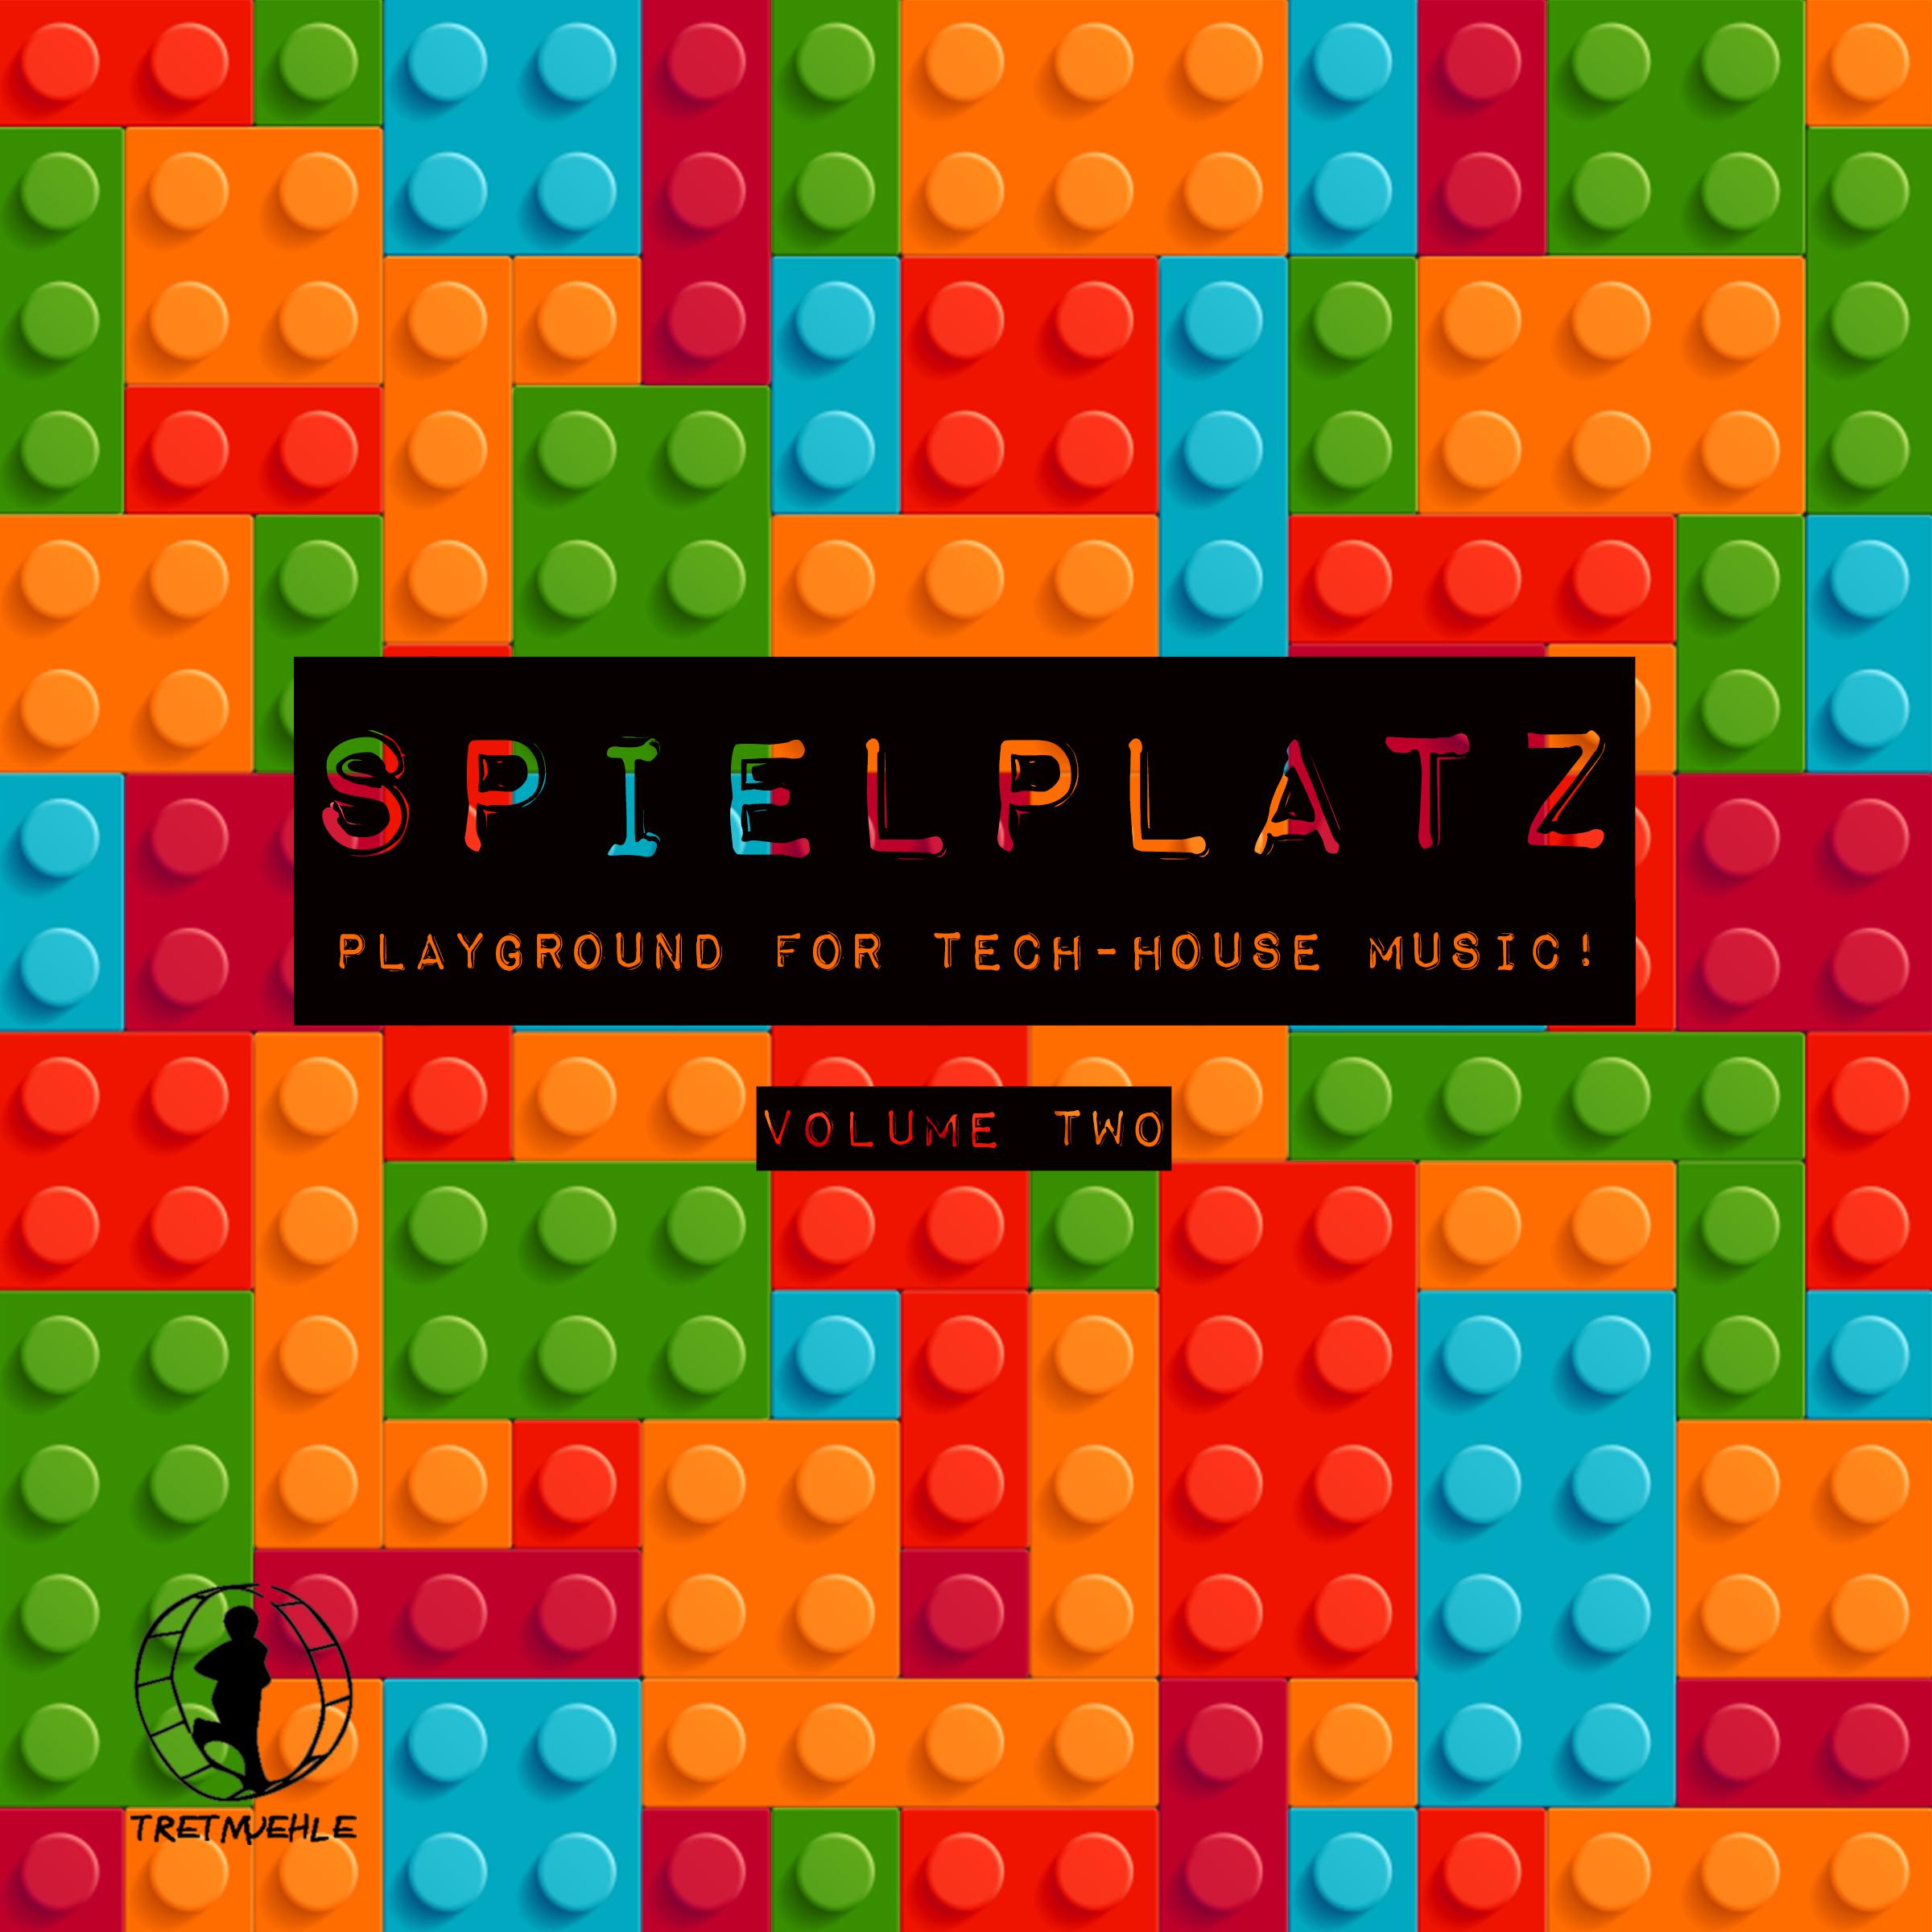 Spielplatz, Vol. 2- Playground for Tech-House Music!